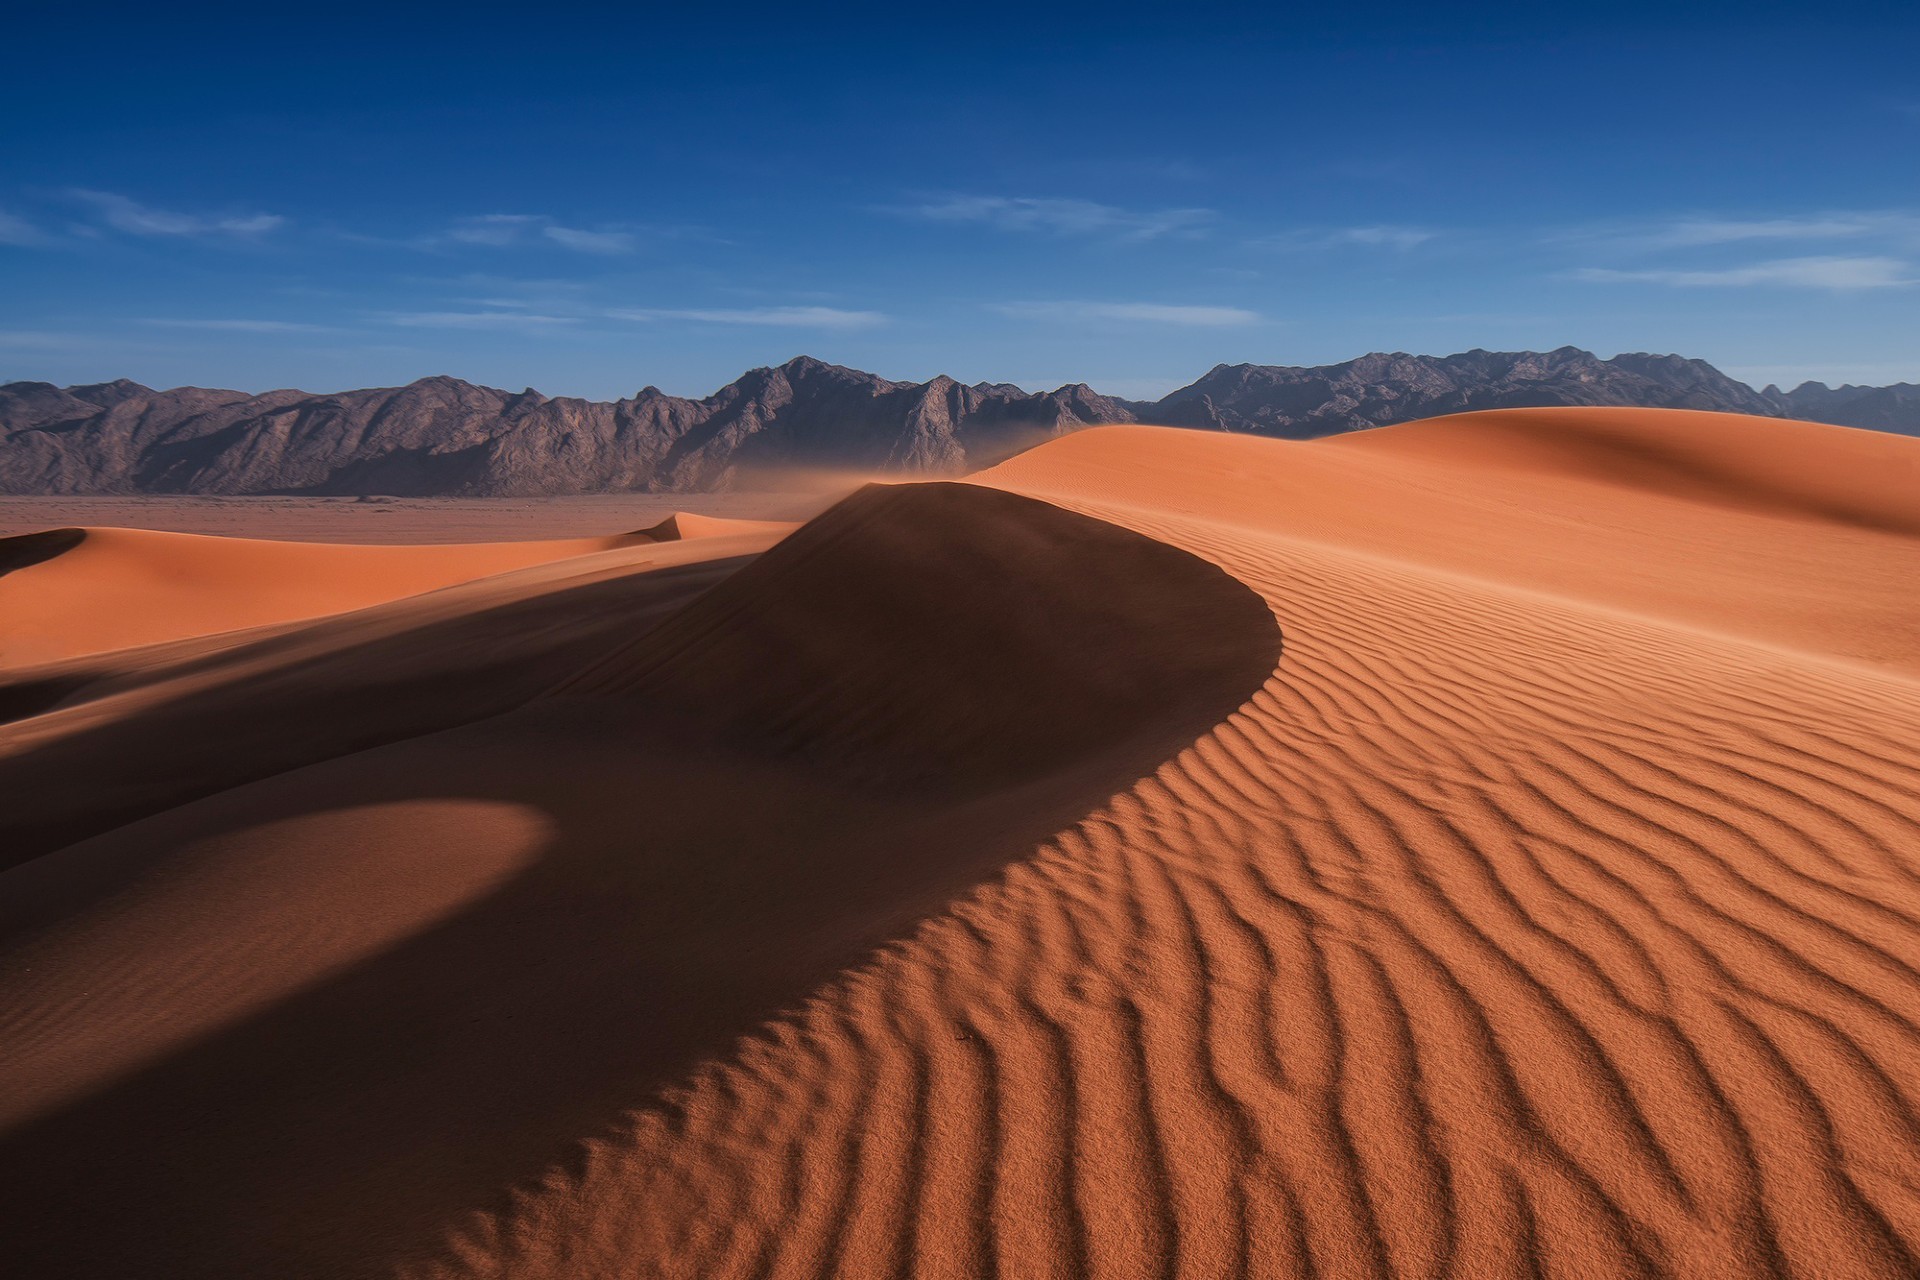 пустыни песок дюна арид сухой бесплодной пейзаж путешествия холм приключения горячая рассвет закат засуха один дистанционное